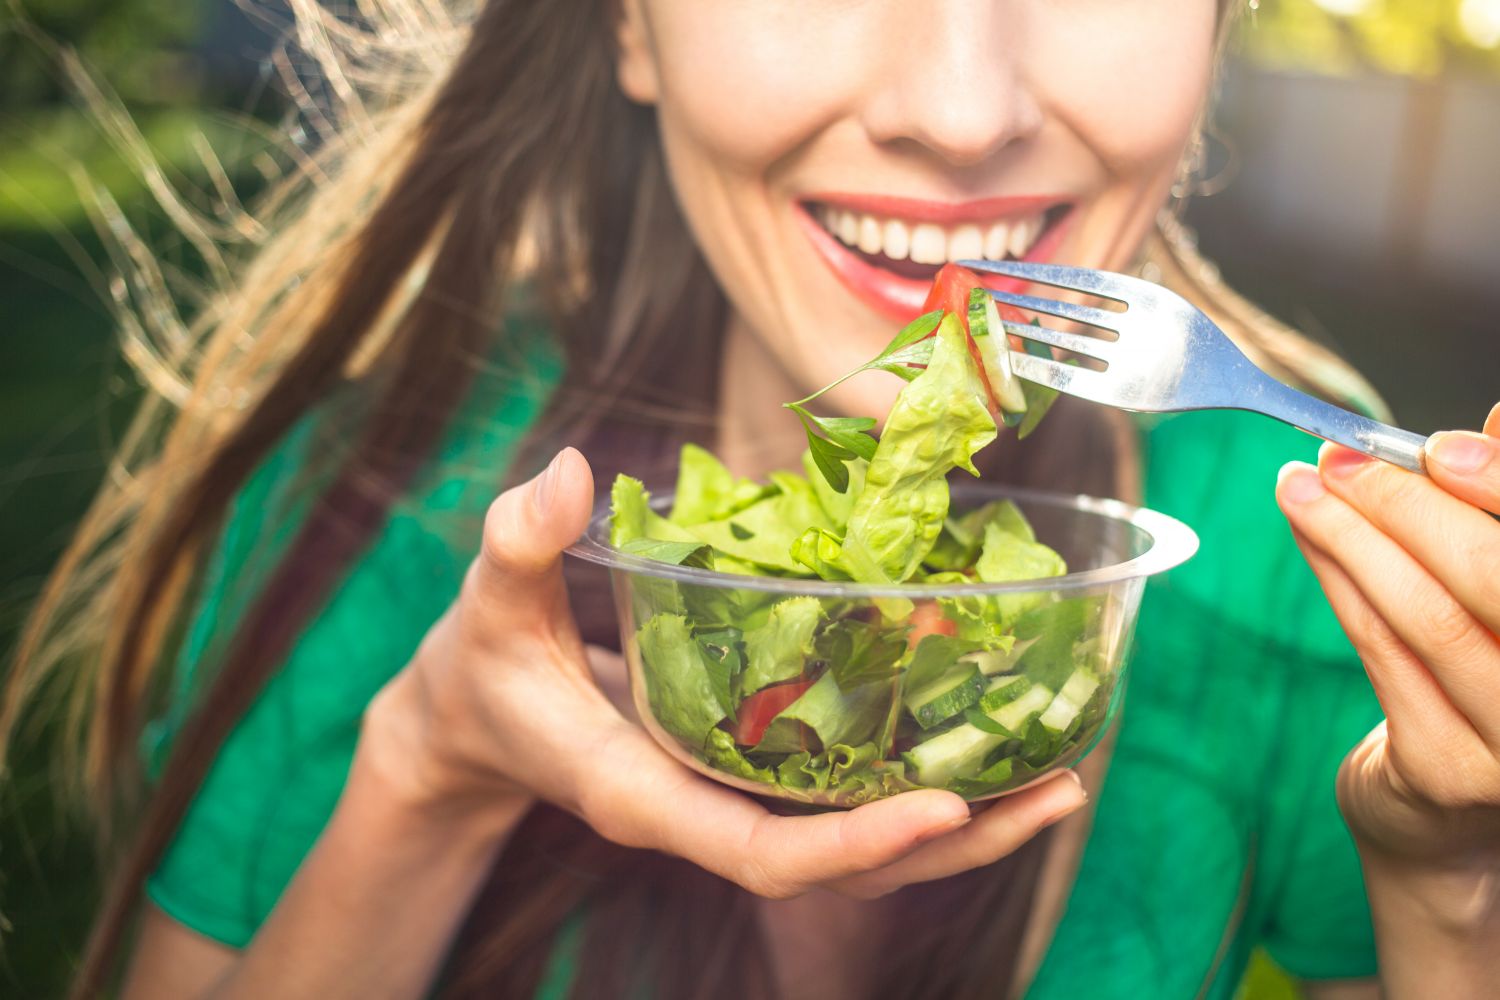 Lachende Frau isst Salat aus Schale in der Hand. Thema: Mentale Gesundheit